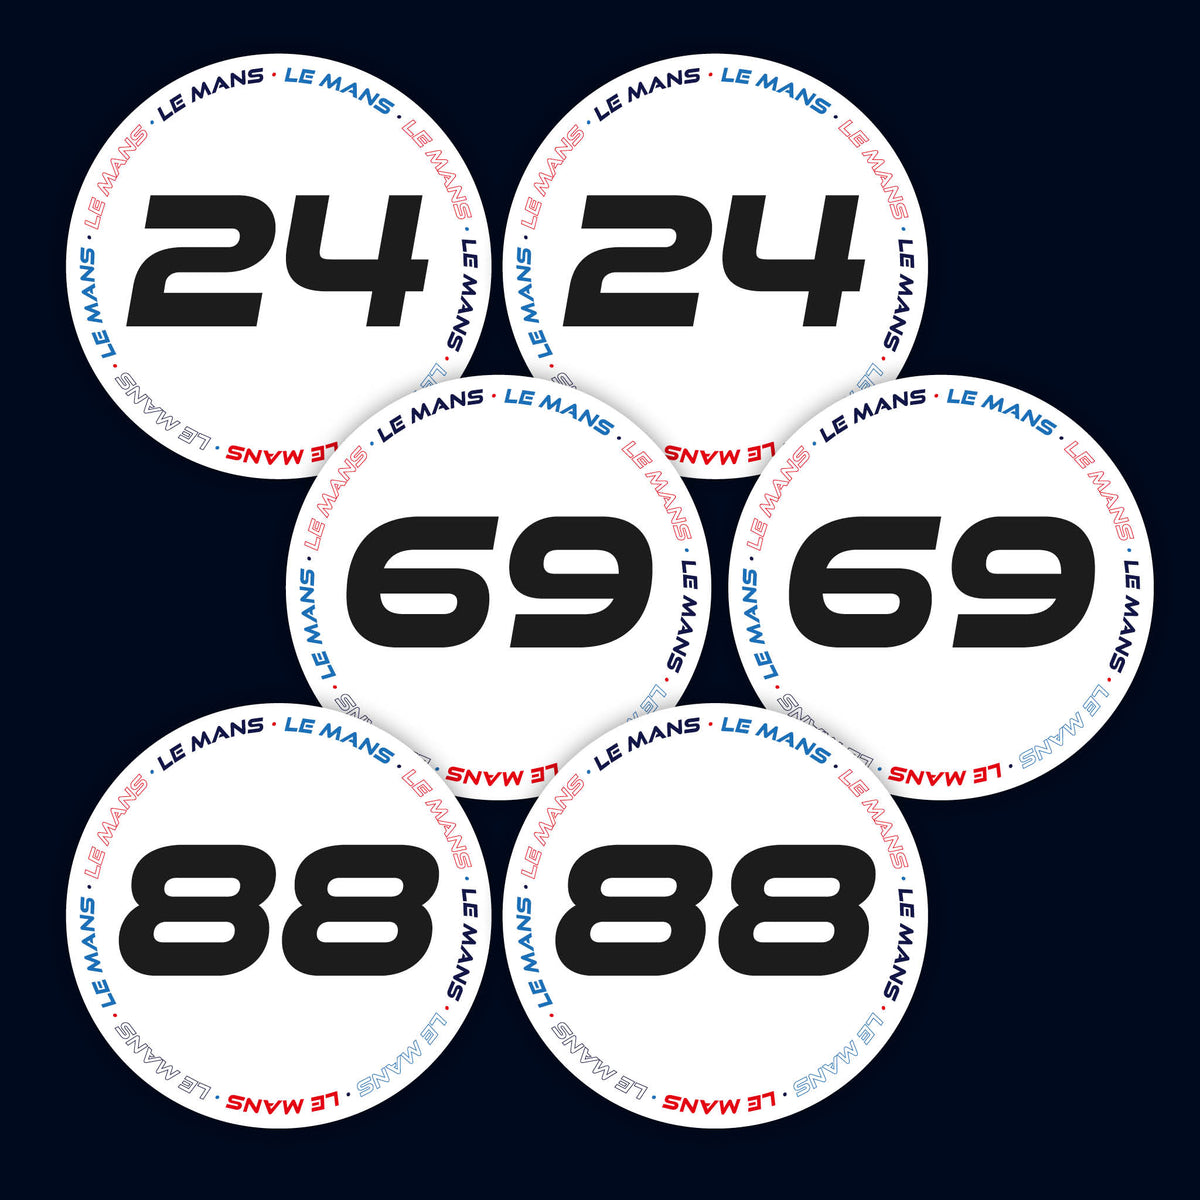 White Le Mans 400mm Diameter Door Racing Numbers (Pair)